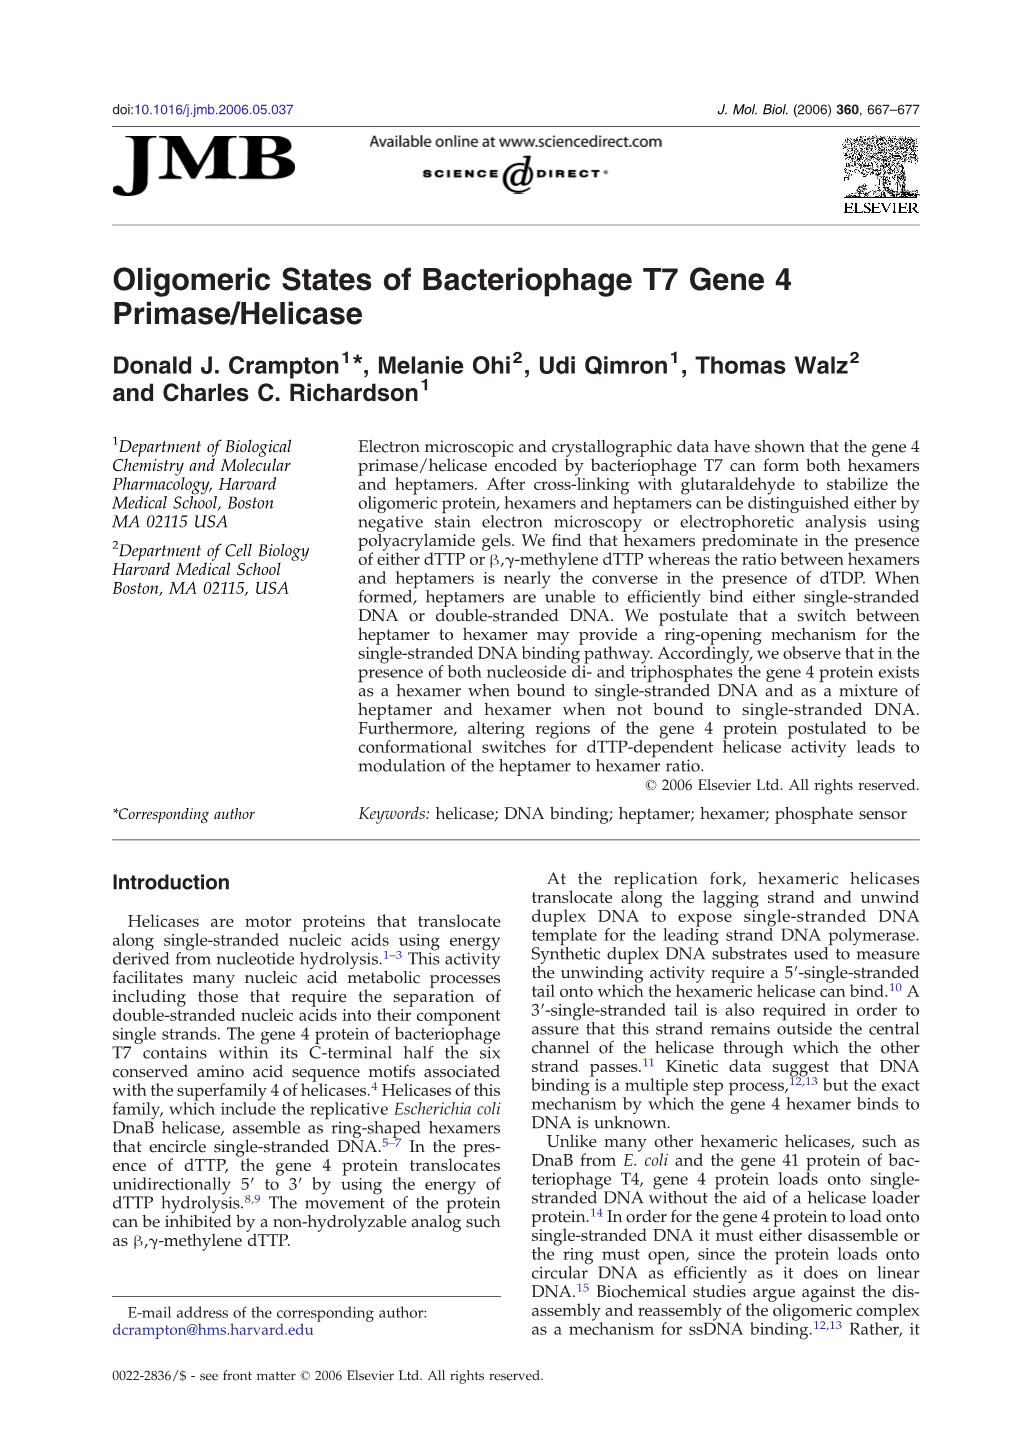 Oligomeric States of Bacteriophage T7 Gene 4 Primase/Helicase